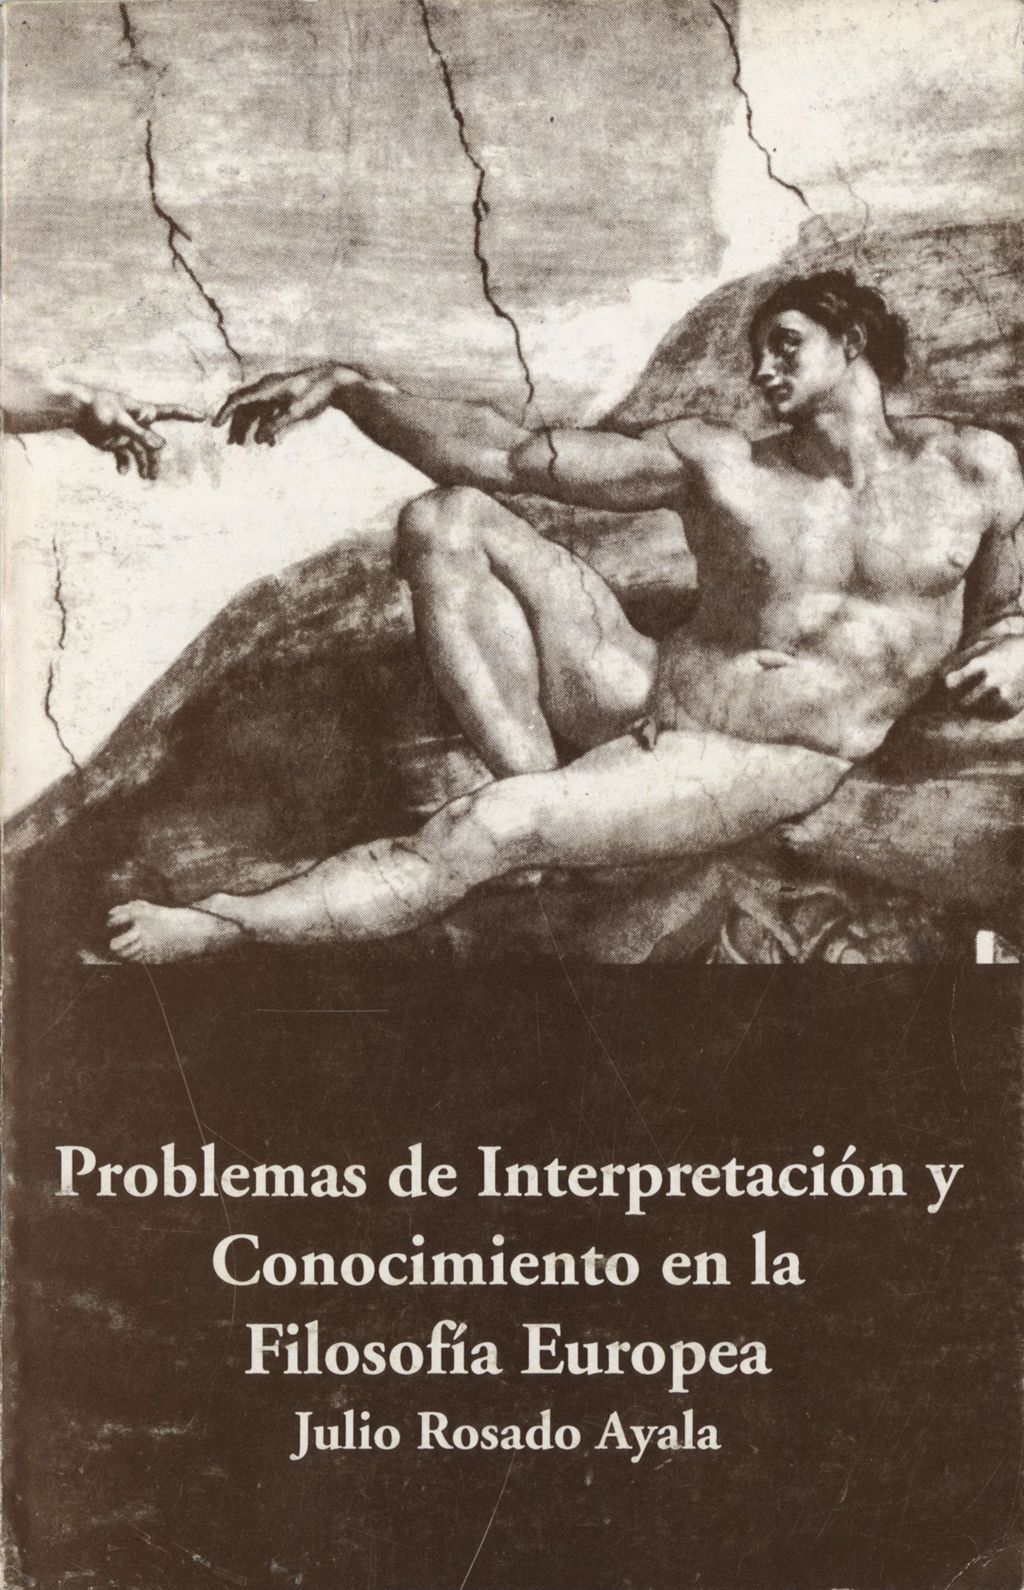 Miniature of Problema de Interpretacion y Conocimiento en la Filosofia Europea